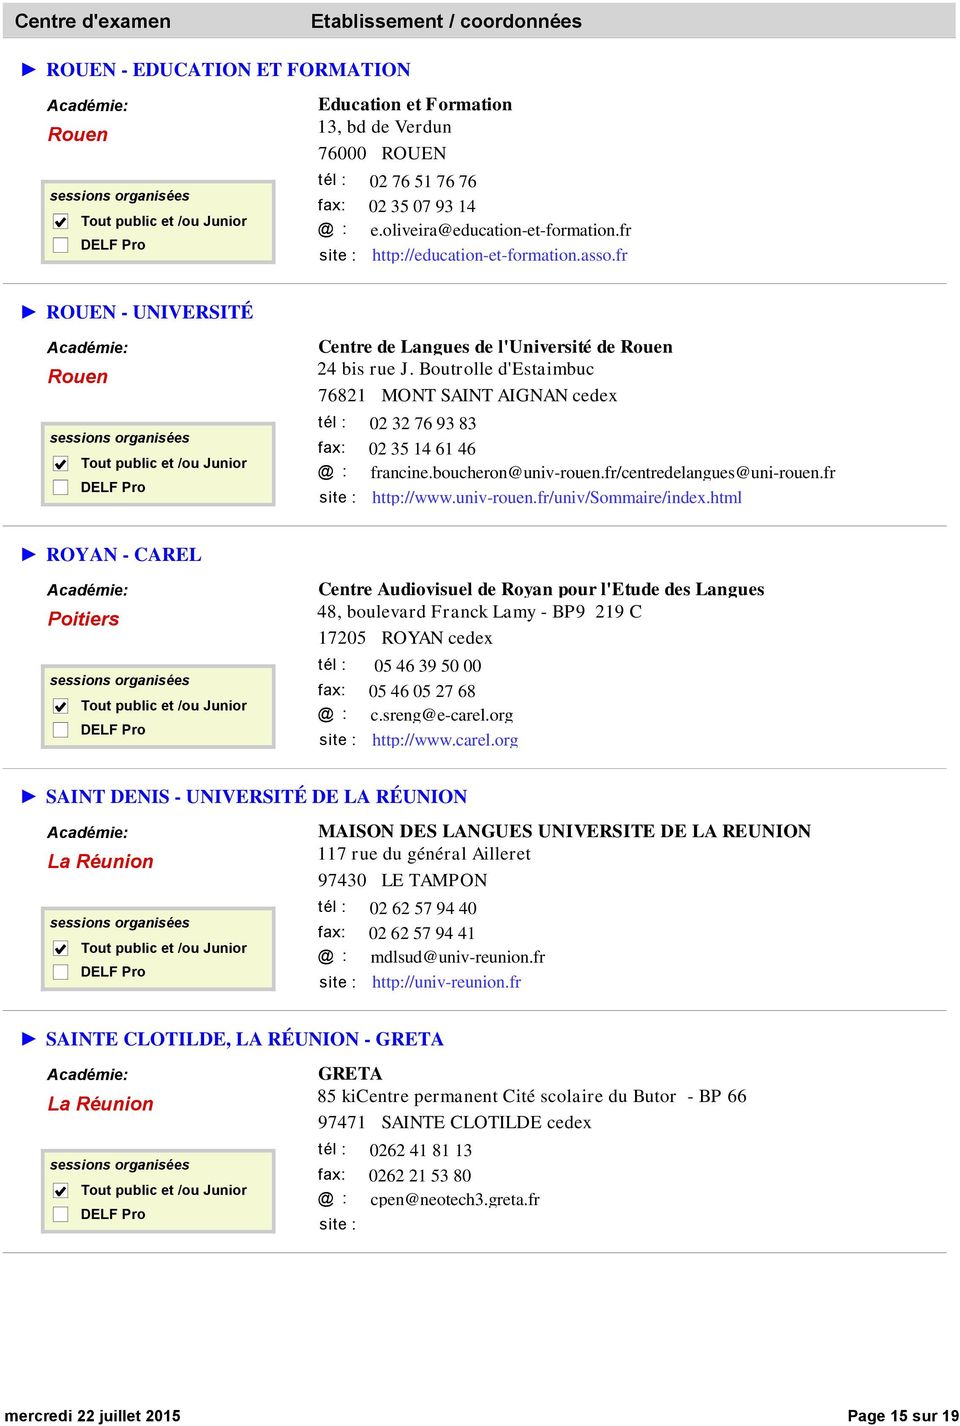 fr/centredelangues@uni-rouen.fr http://www.univ-rouen.fr/univ/sommaire/index.